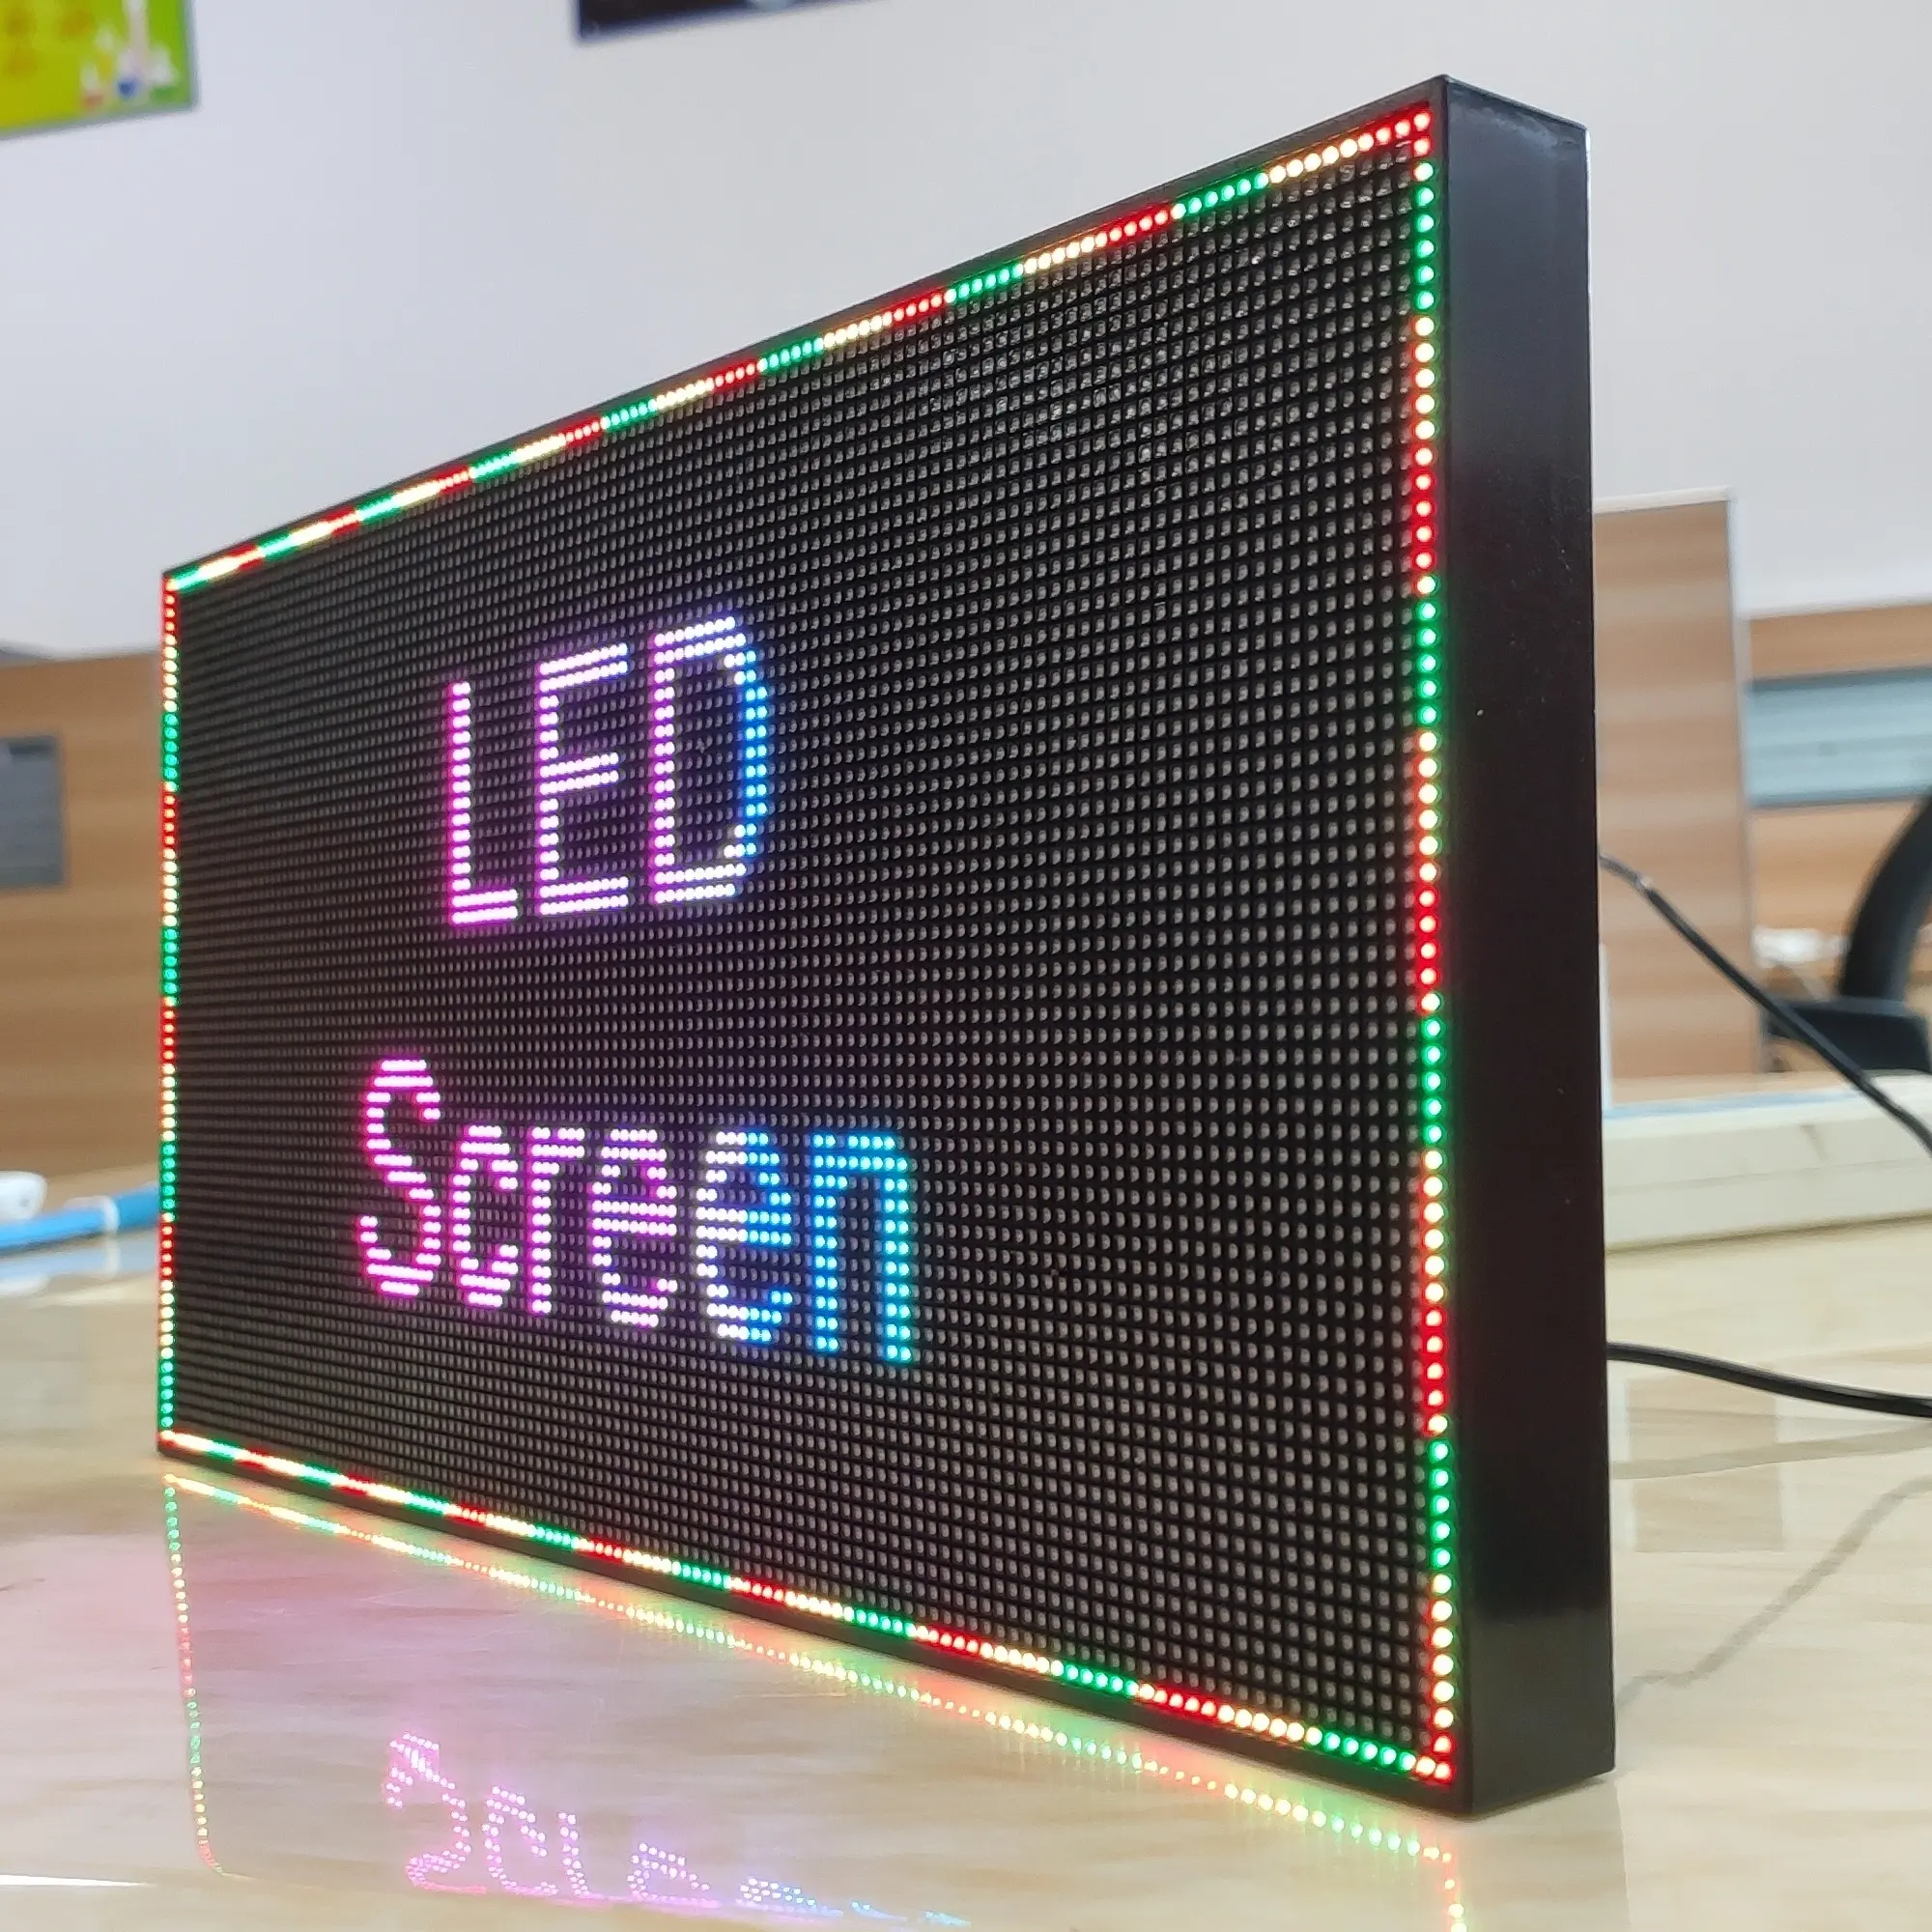 Cartelera LED P2.5 programable a todo Color, cartel pequeño para mensajes, publicidad